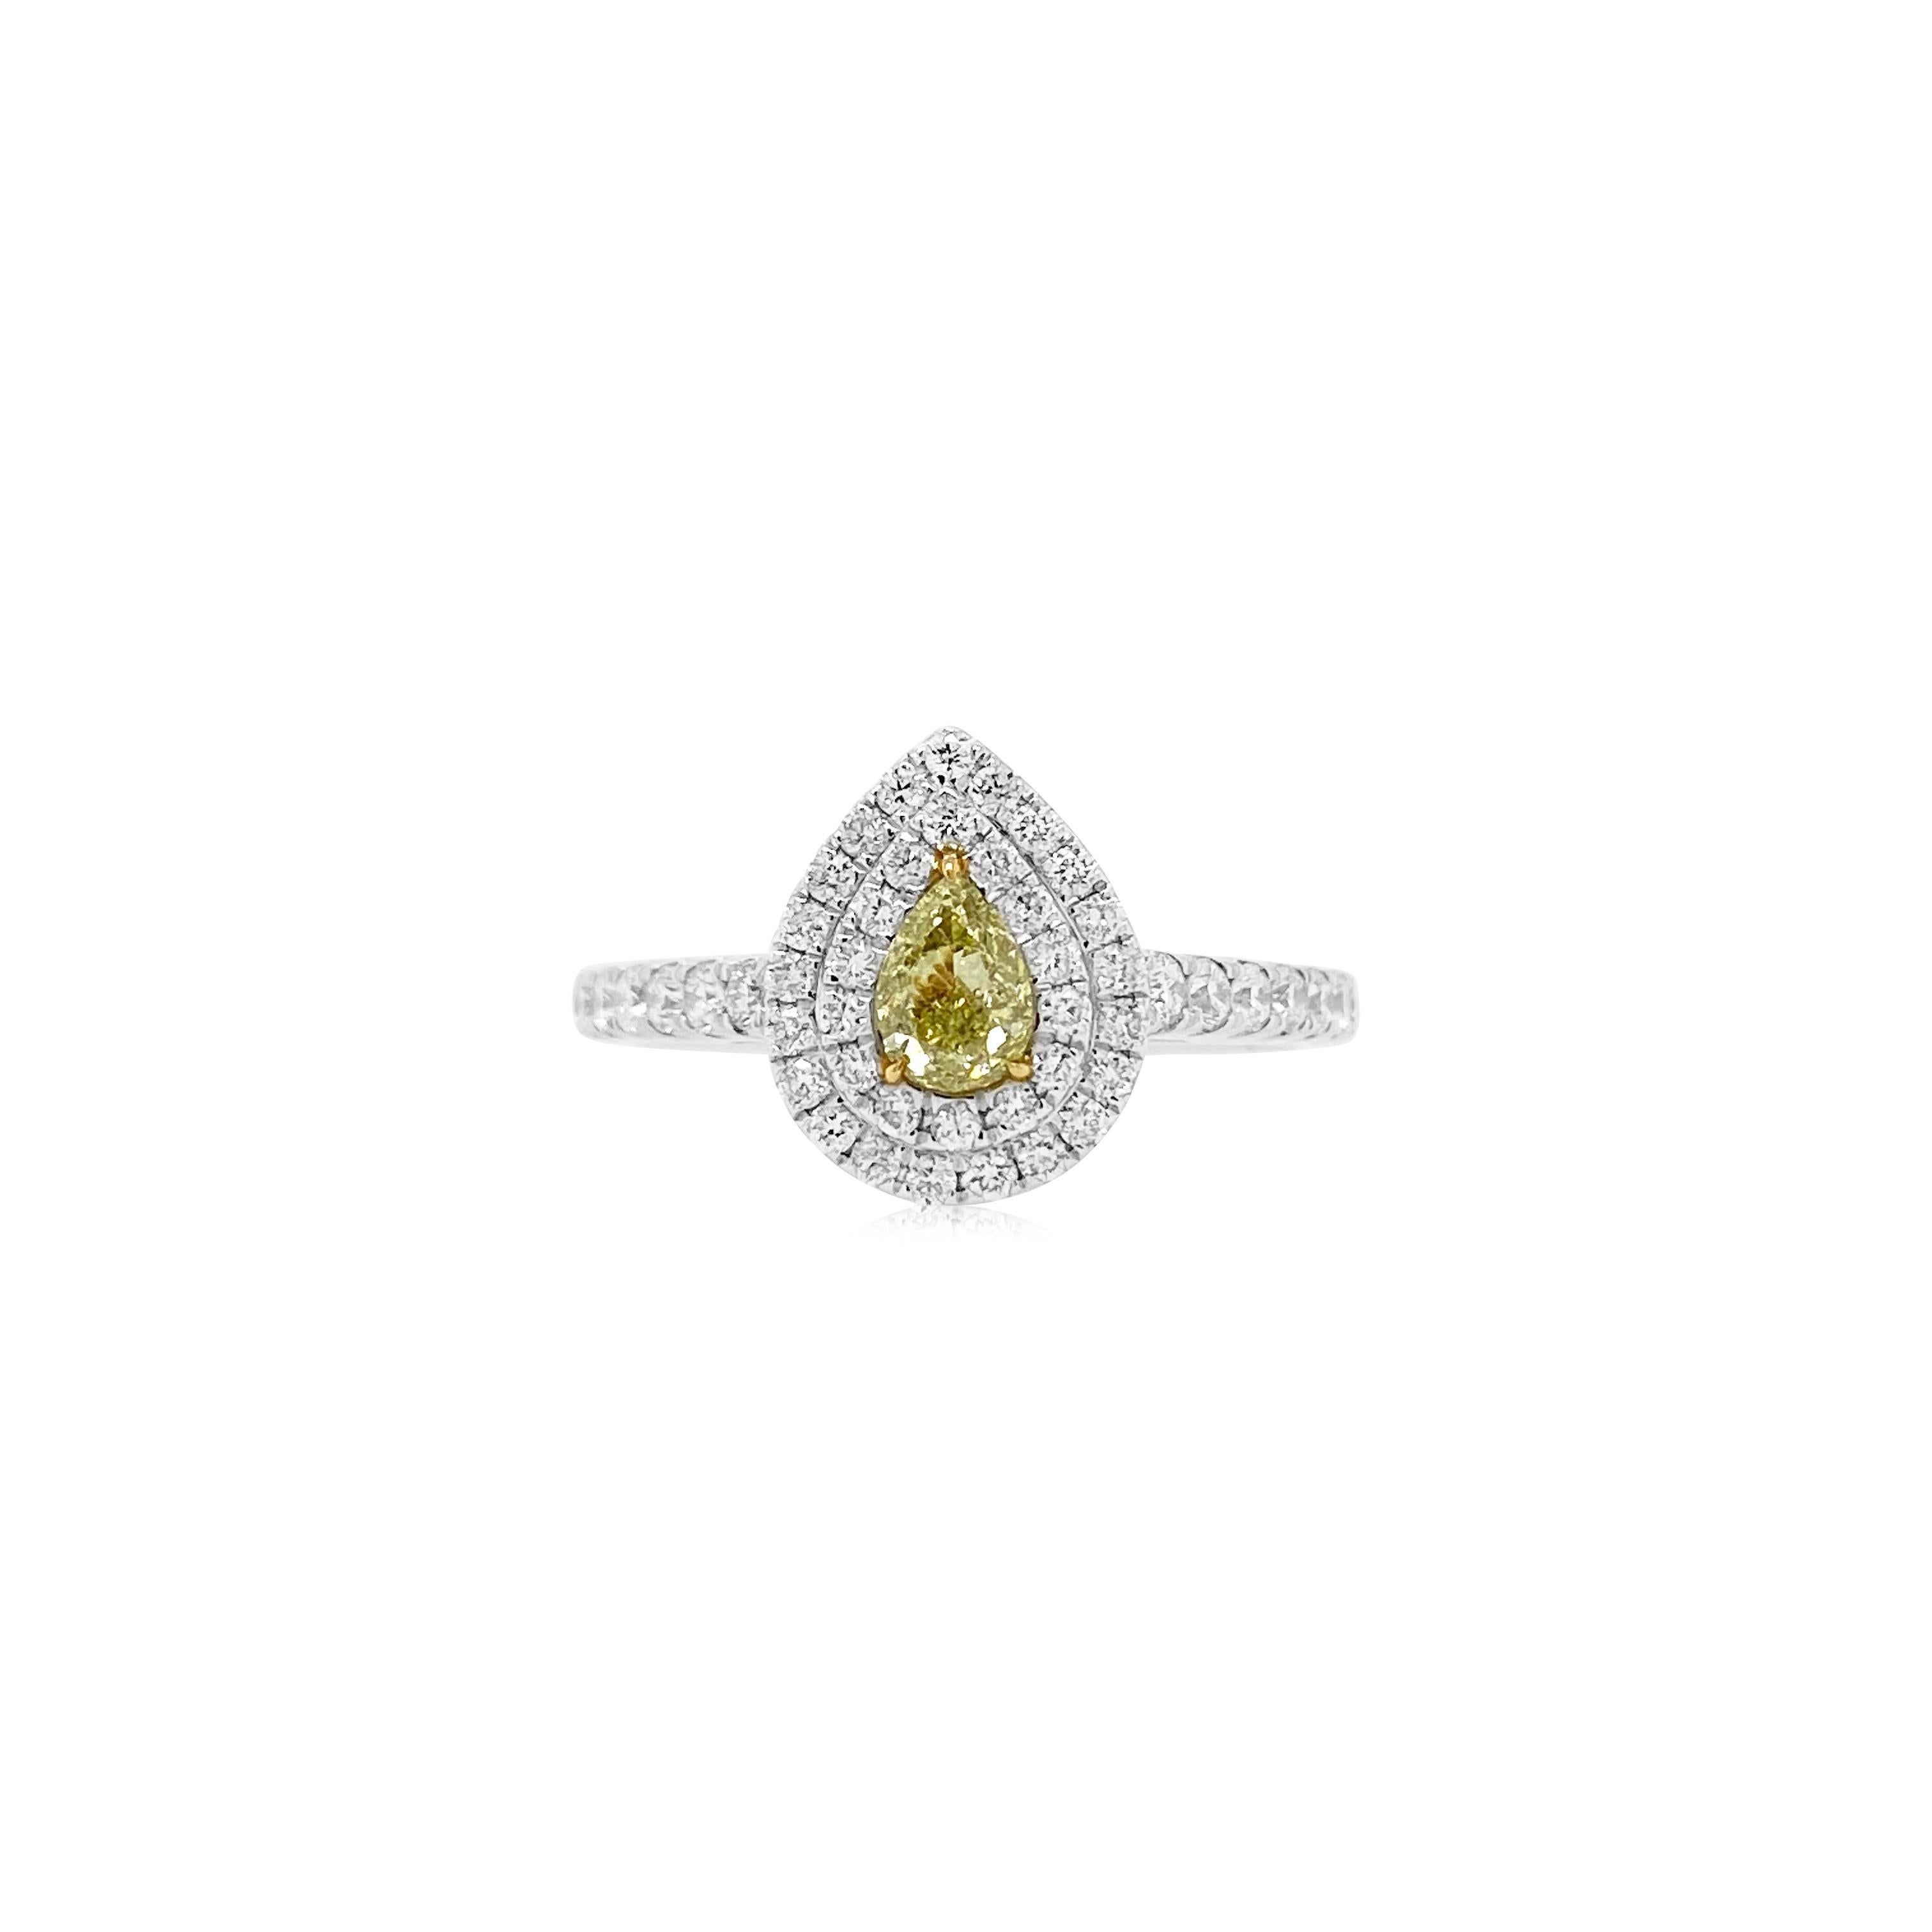 Dieser klassische Verlobungsring in Birnenform aus einem gelben Fancy-Diamanten und einem weißen Diamanten ist ein schönes Beispiel für modernes und doch klassisches Design und natürliche Diamanten von seltener Farbe.


-	Der Diamant in der Mitte